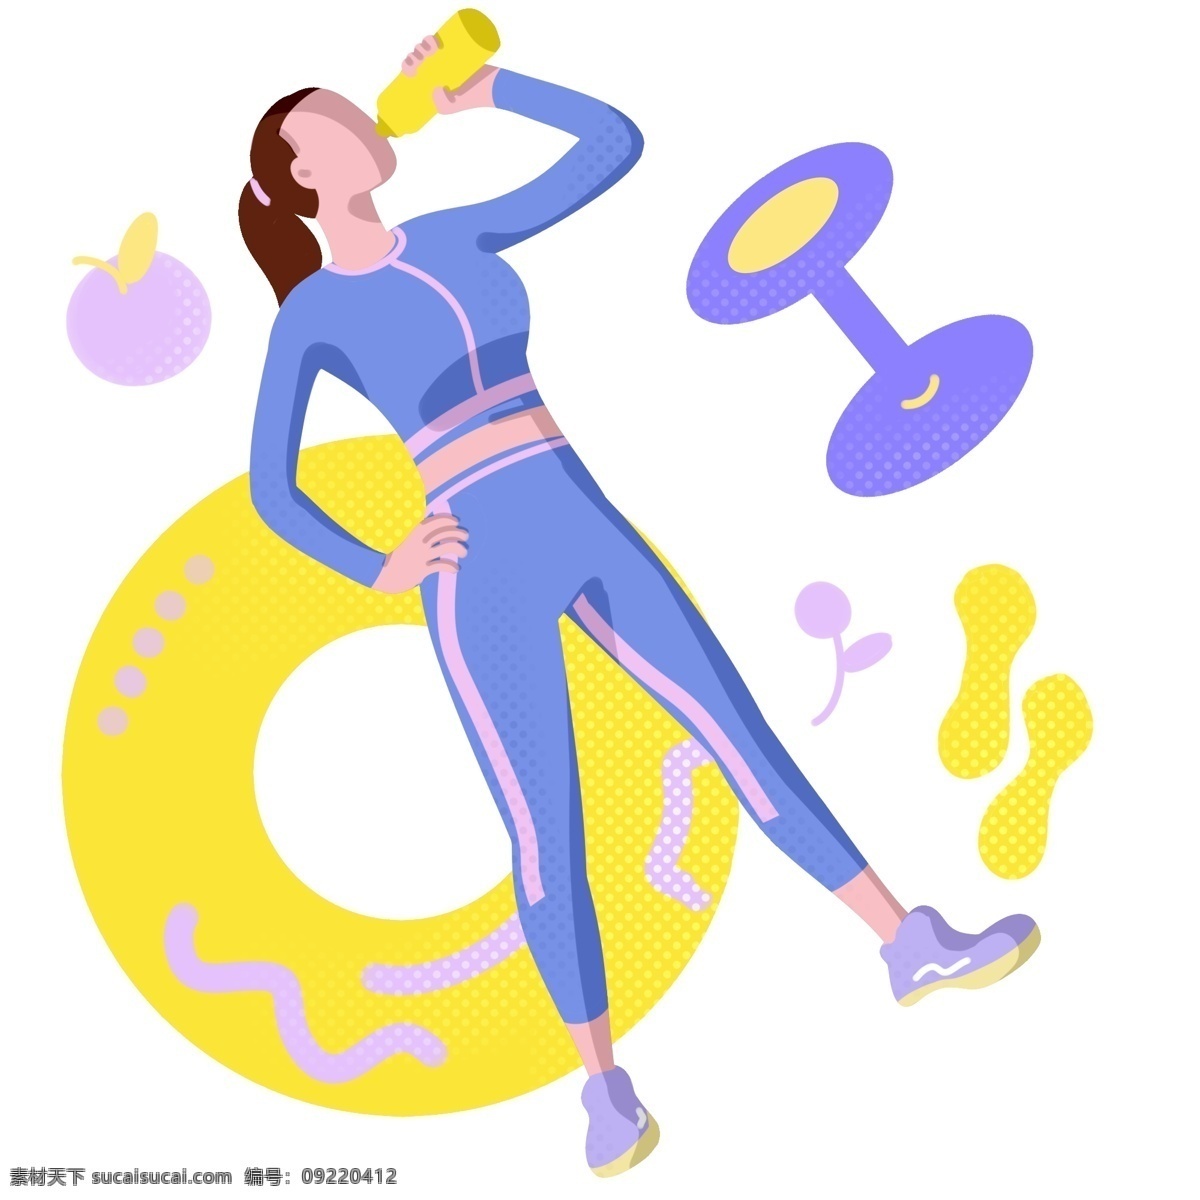 运动 健身 补水 插画 喝水的女孩 卡通插画 健身插画 运动插画 运动器材 运动器械 健身的女孩